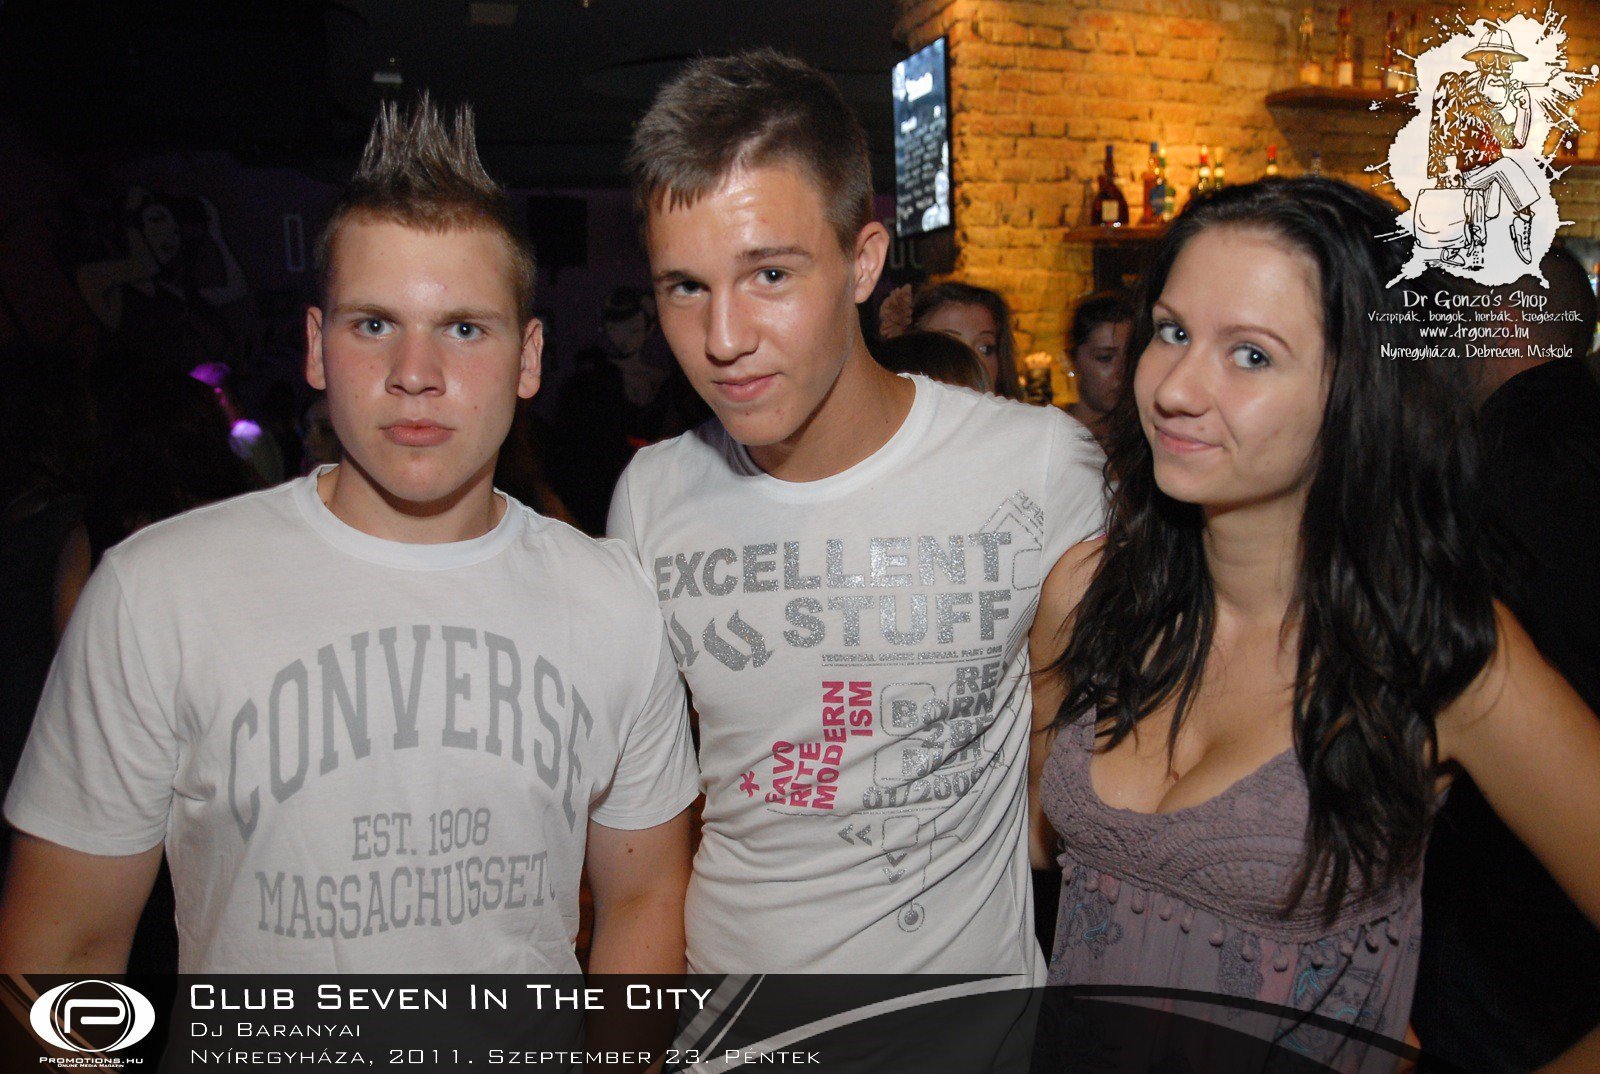 Nyíregyháza, Club Seven In The City - 2011. Szeptember 23. Péntek